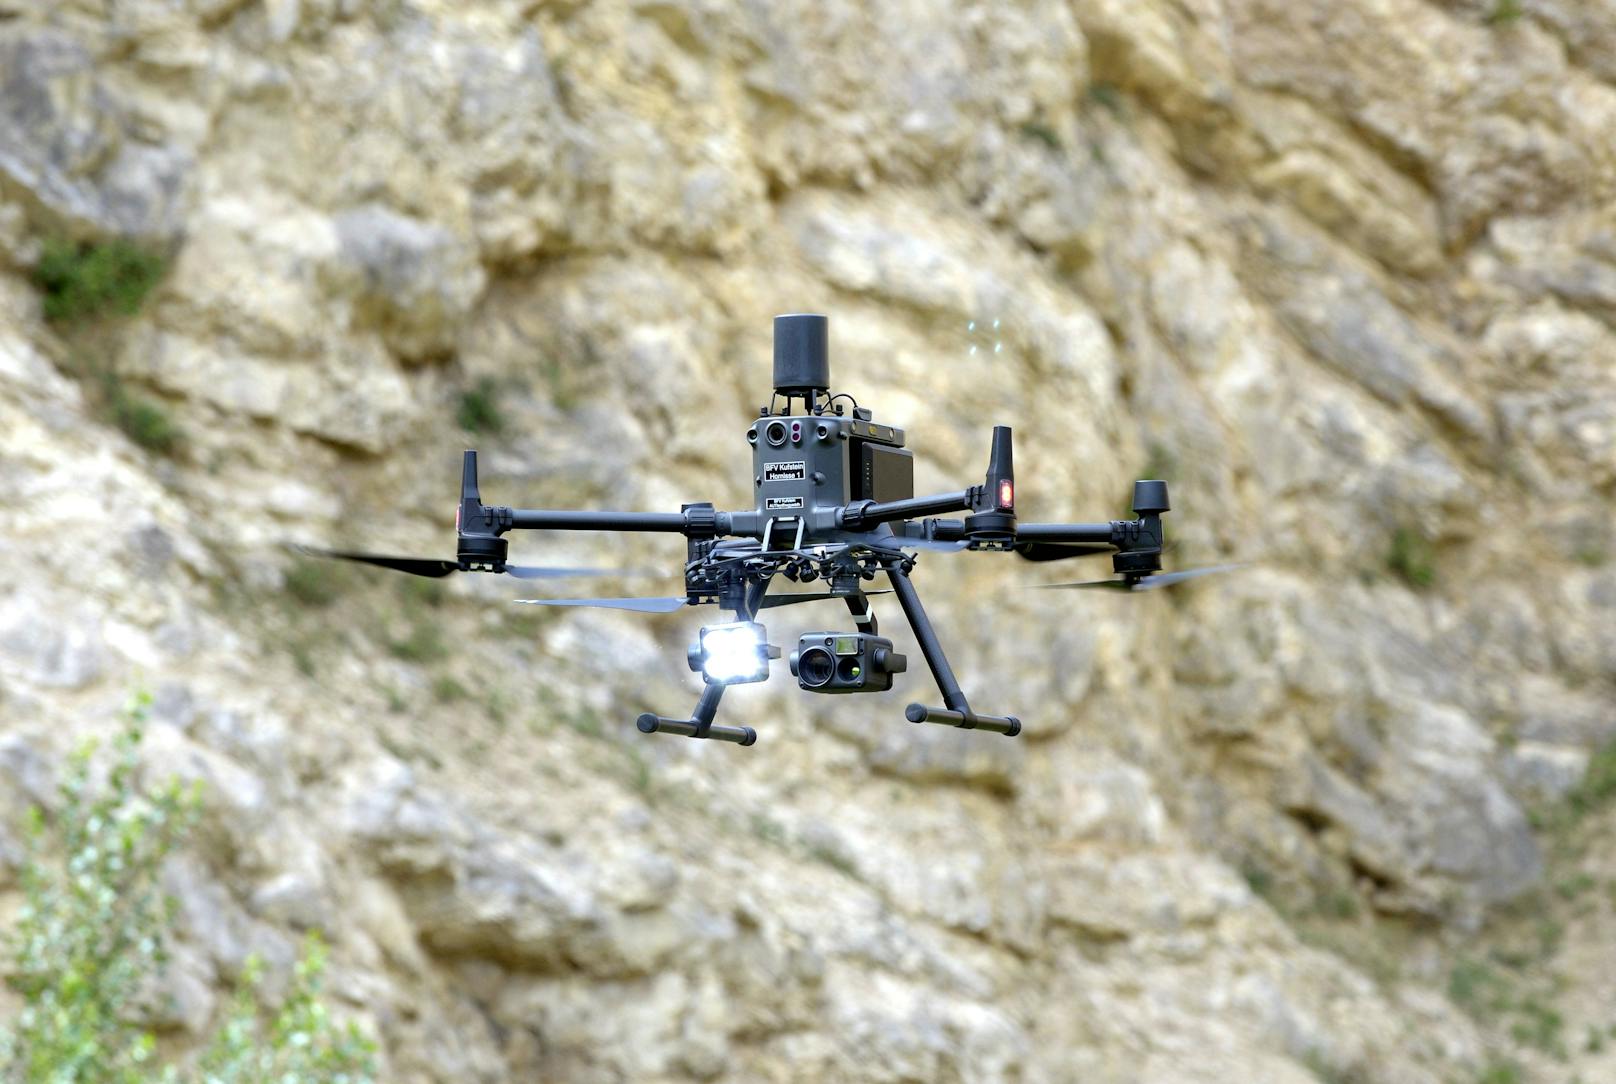 Einsatzvorführung mit "Drohnen zur Einsatzunterstützung bei Waldbrand, Personensuche und Lageerkundung" in Gumpoldskirchen.